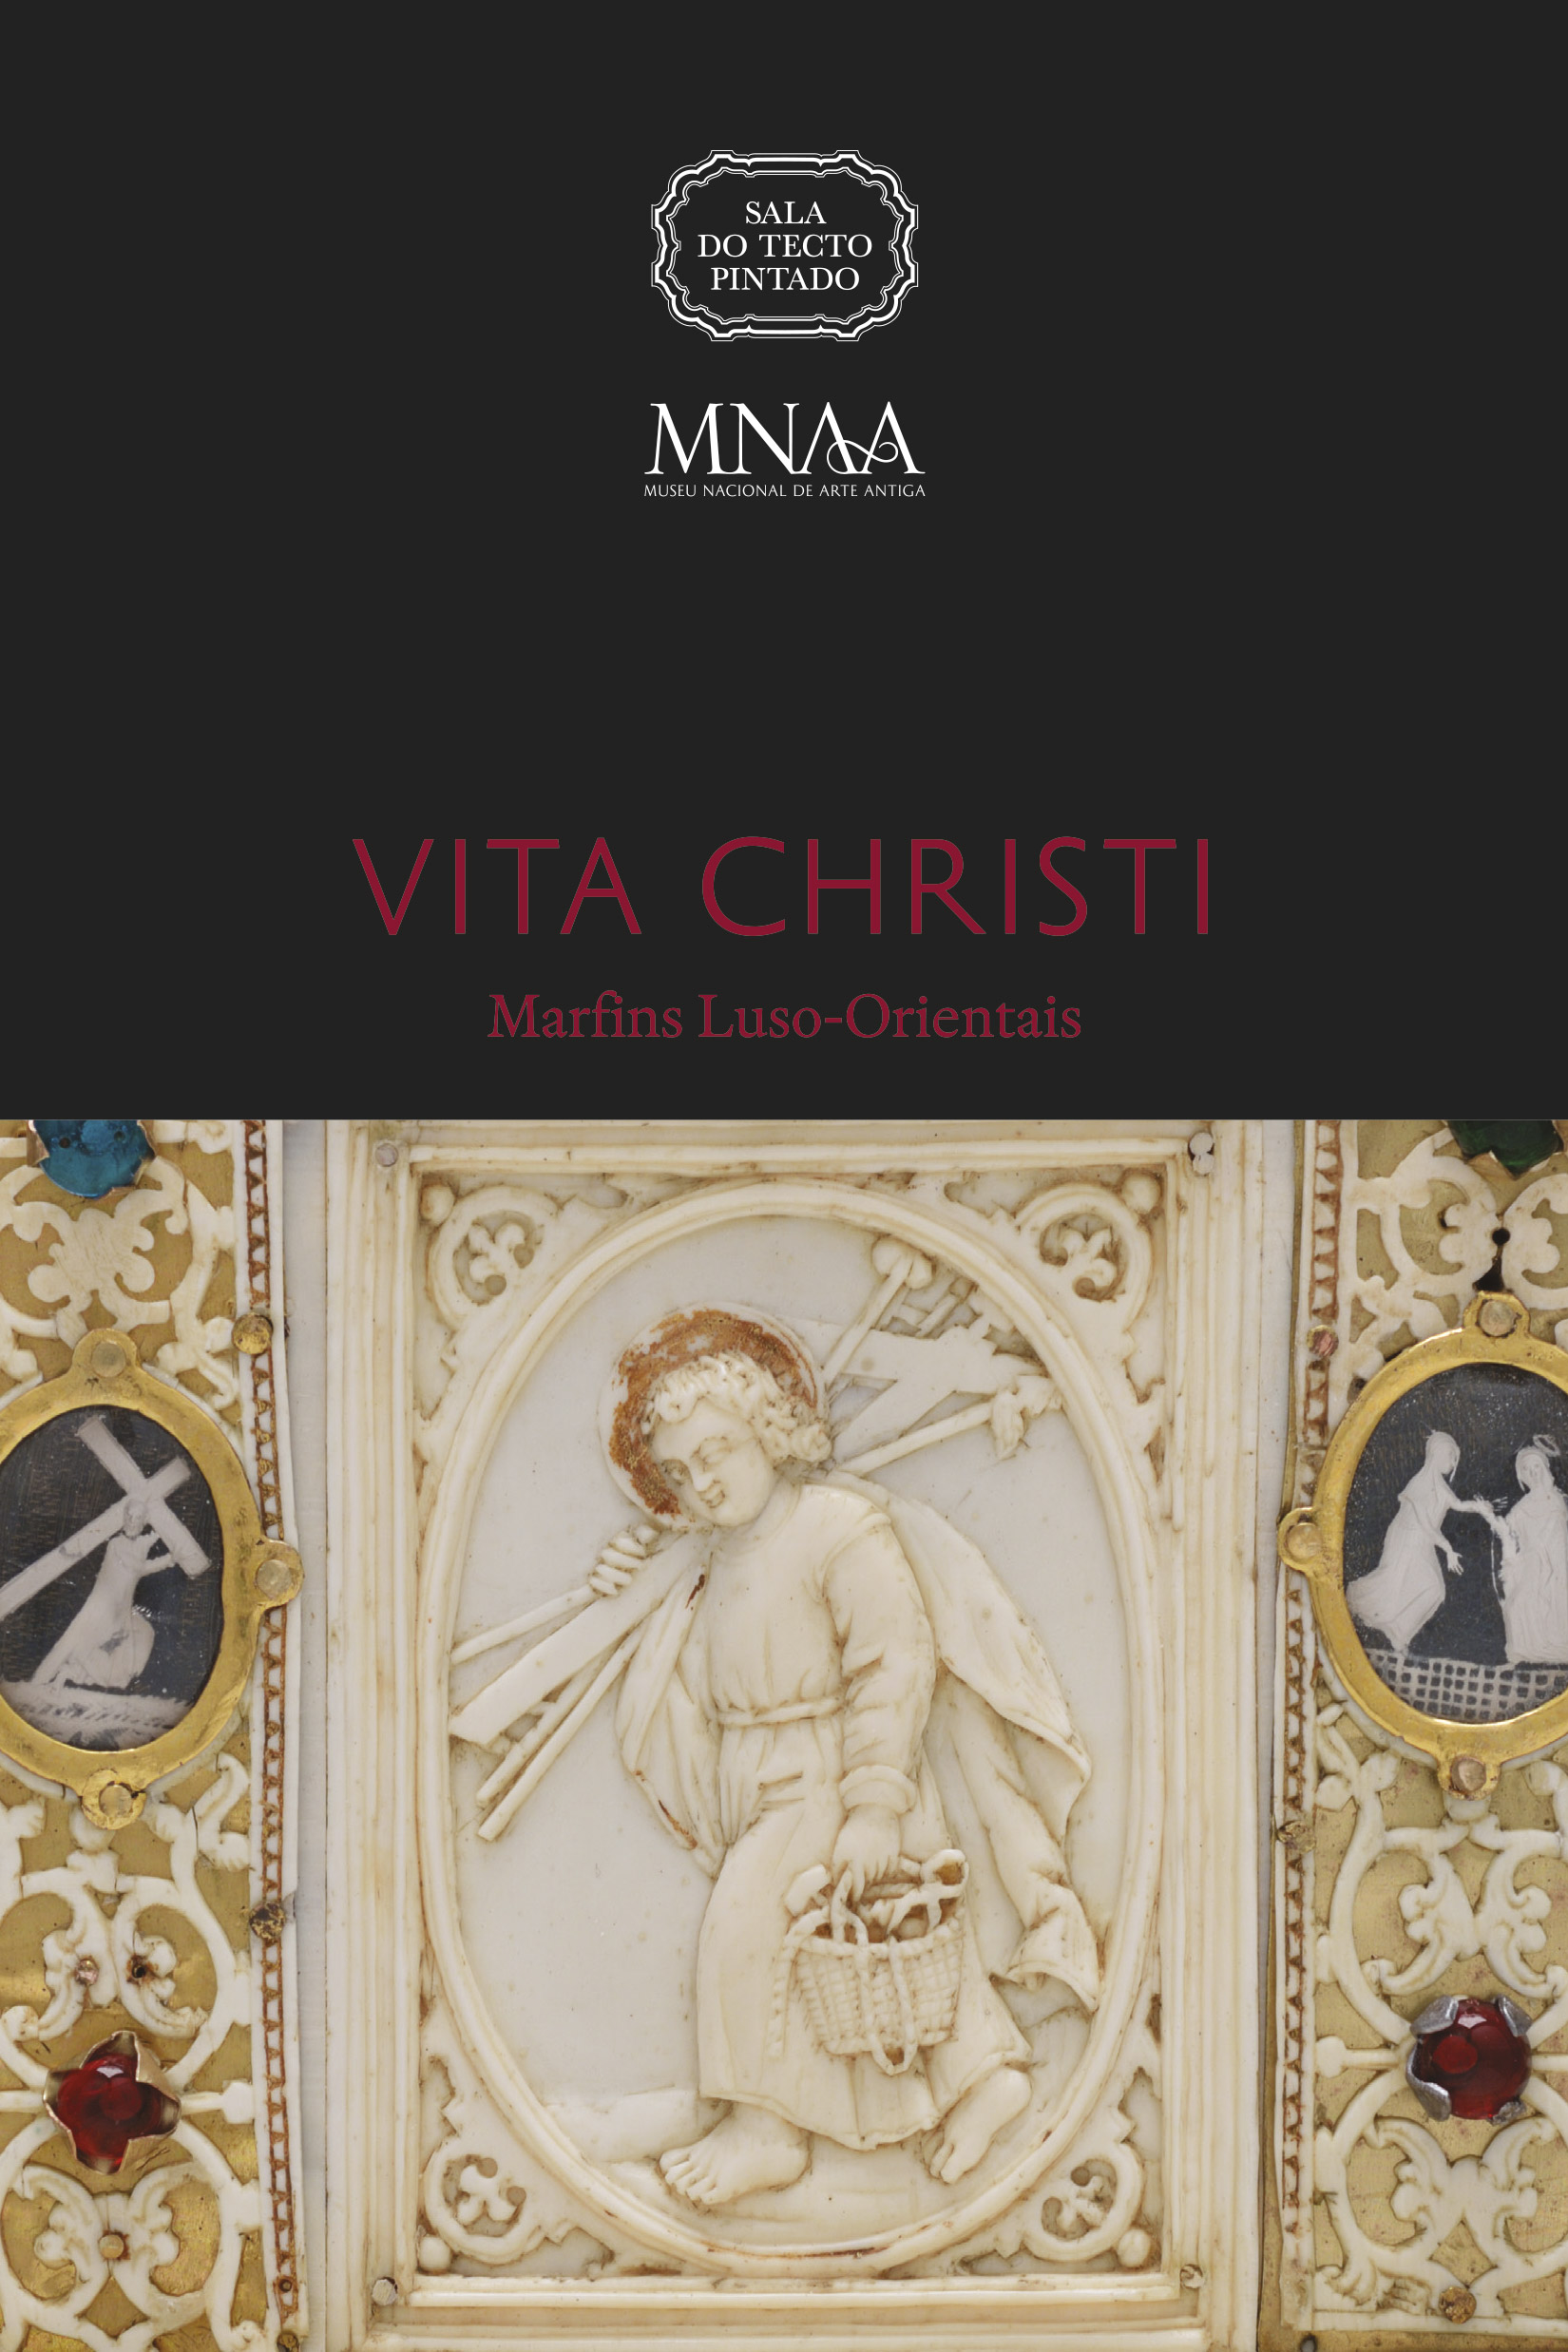 Catálogo exposição Vita Christi